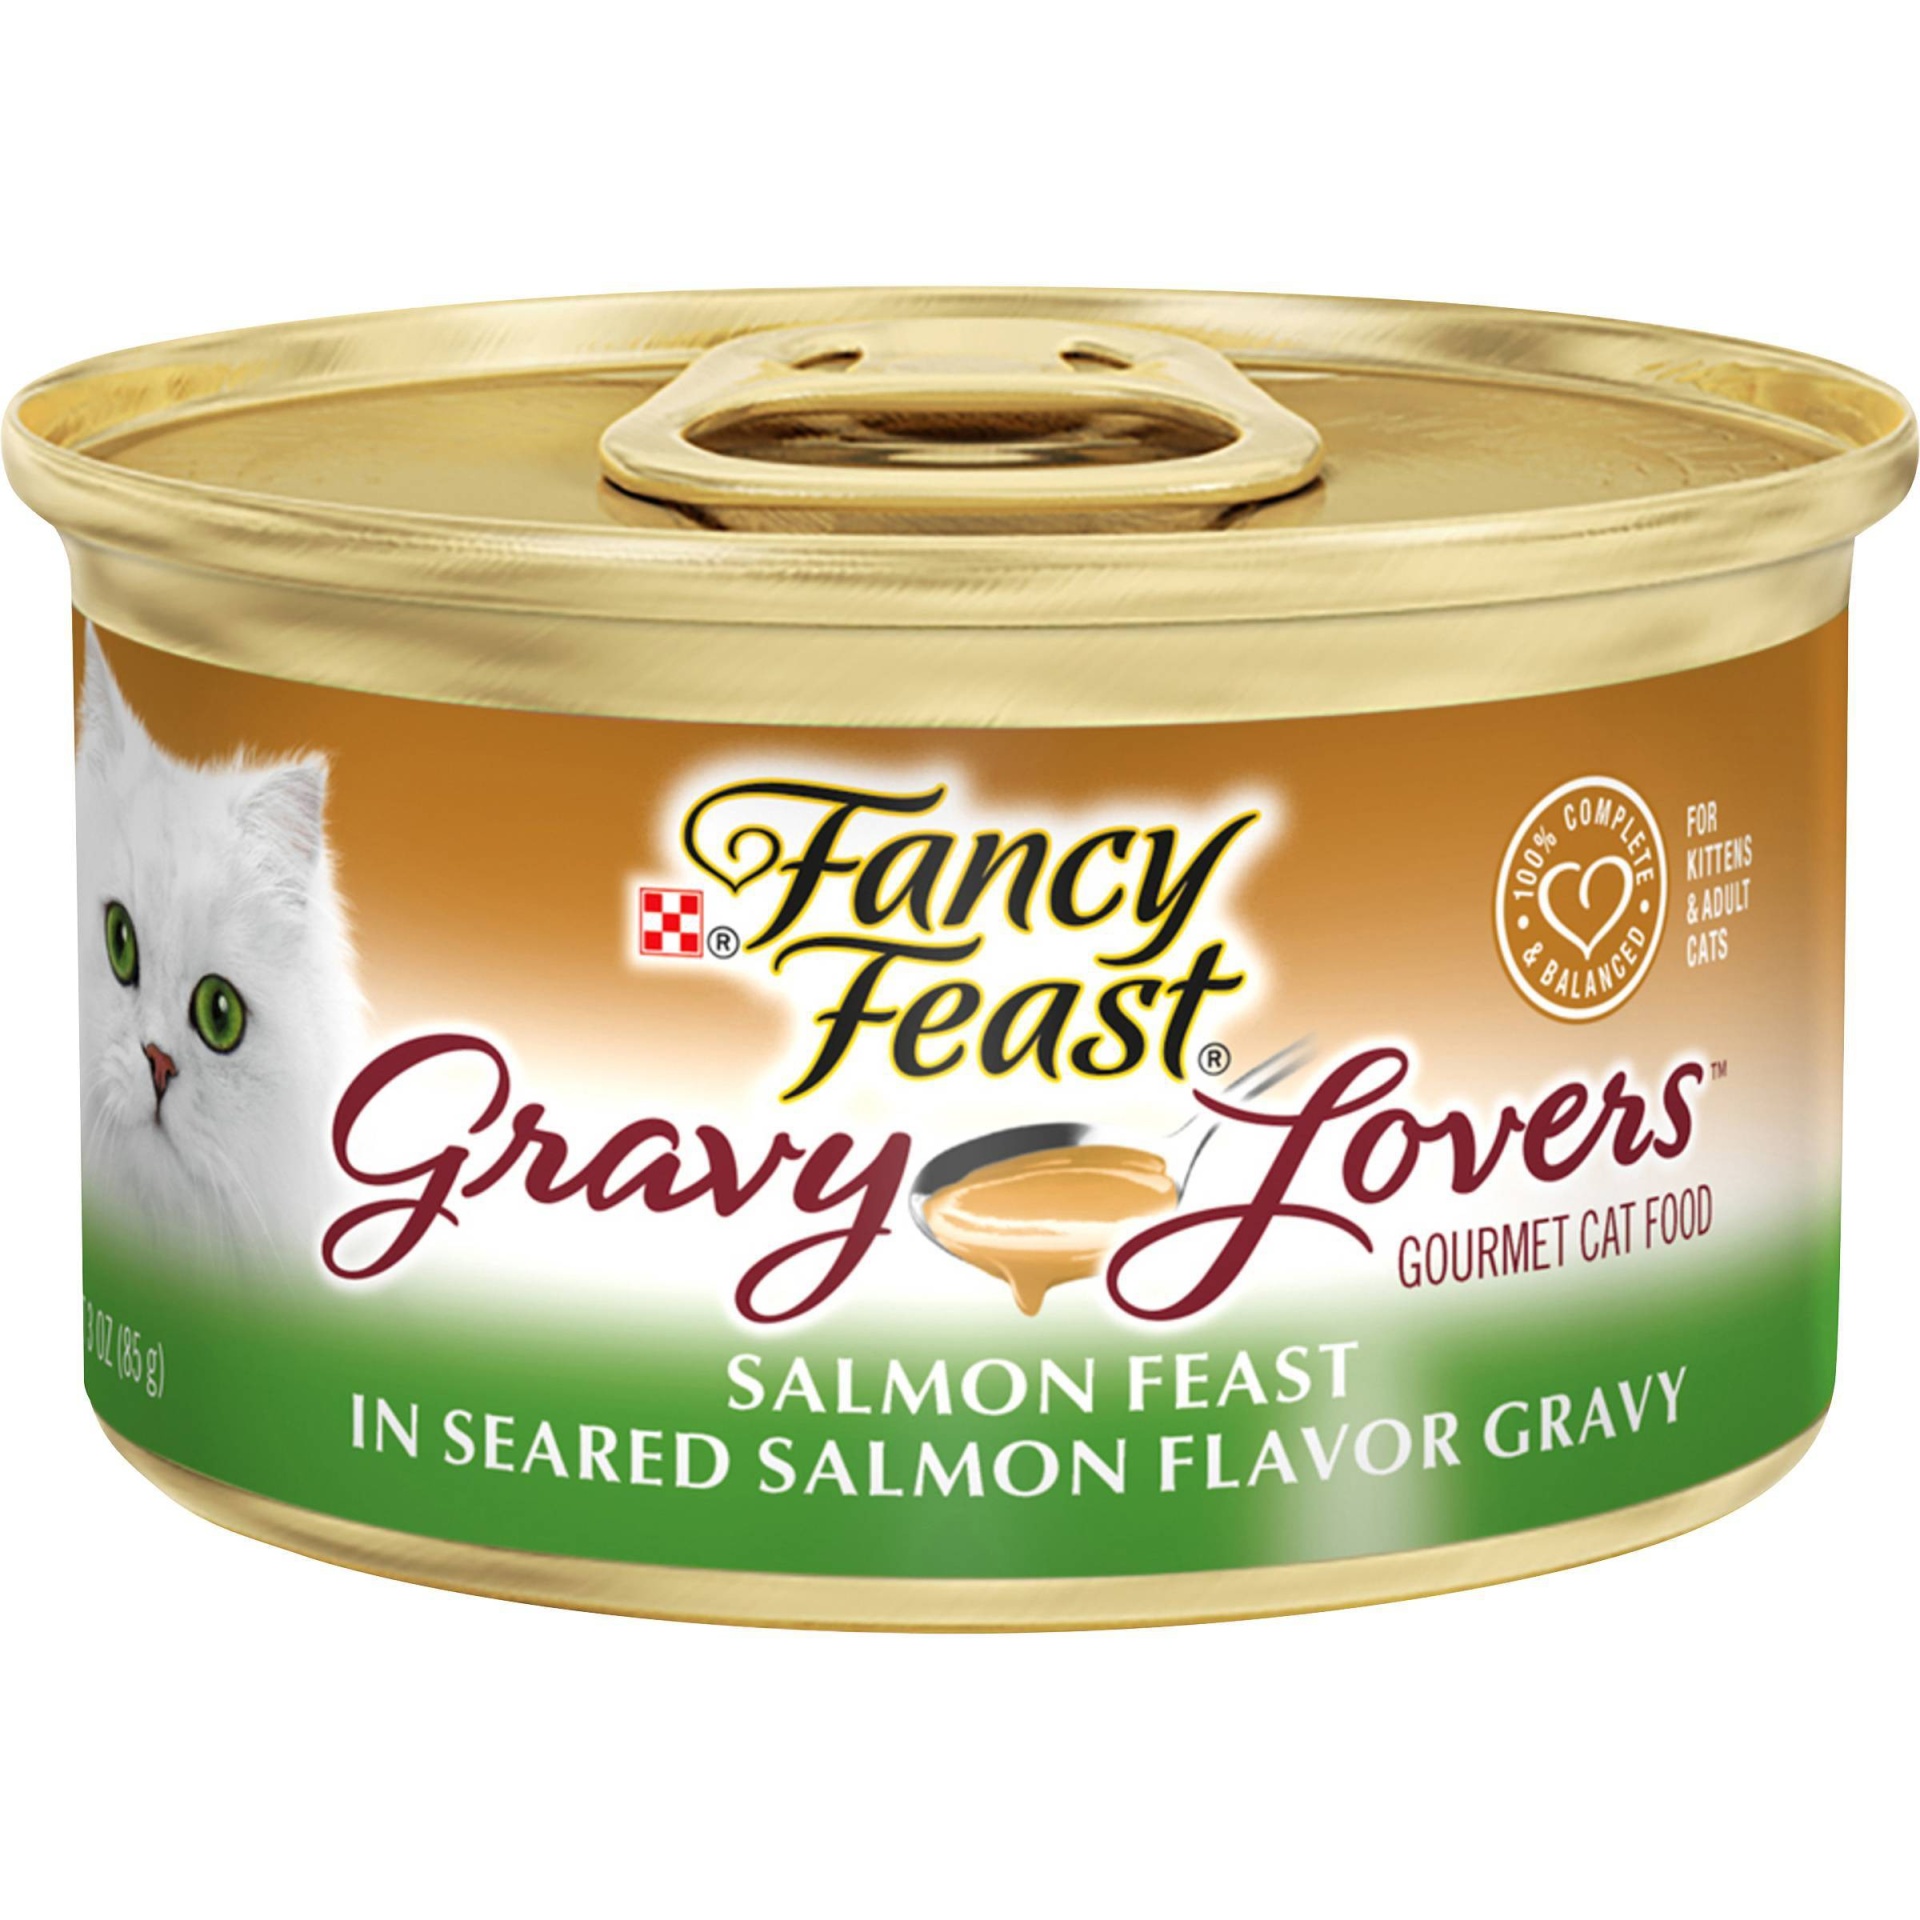 slide 1 of 7, Fancy Feast Gravy Lovers Salmon Feast in Seared Salmon Flavor Gravy Cat Food, 3 oz